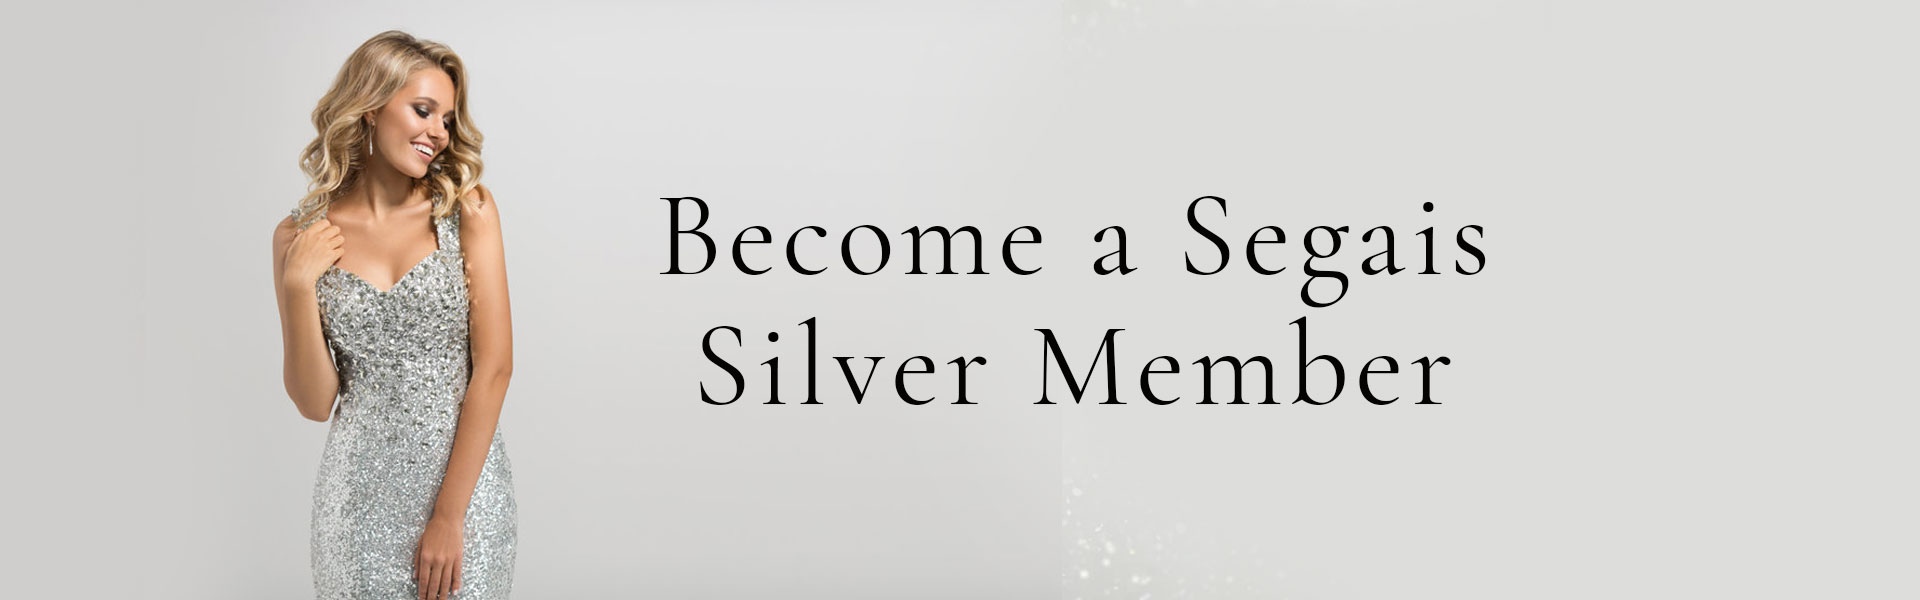 Become a Segais Silver Member Salon Savings Wantage